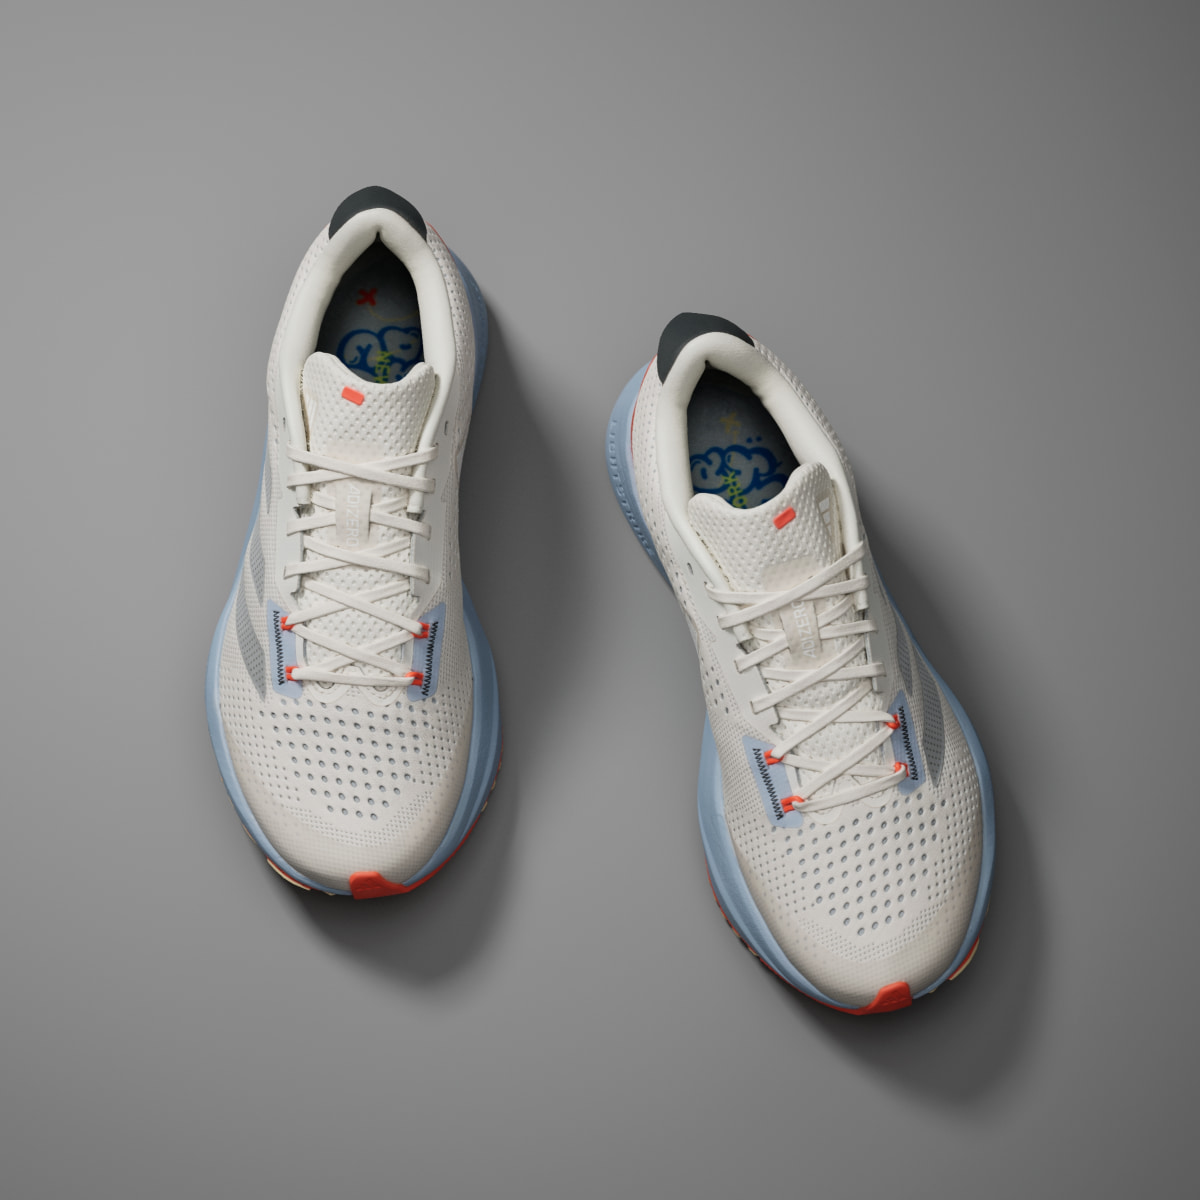 Adidas Adizero SL Running Shoes. 4